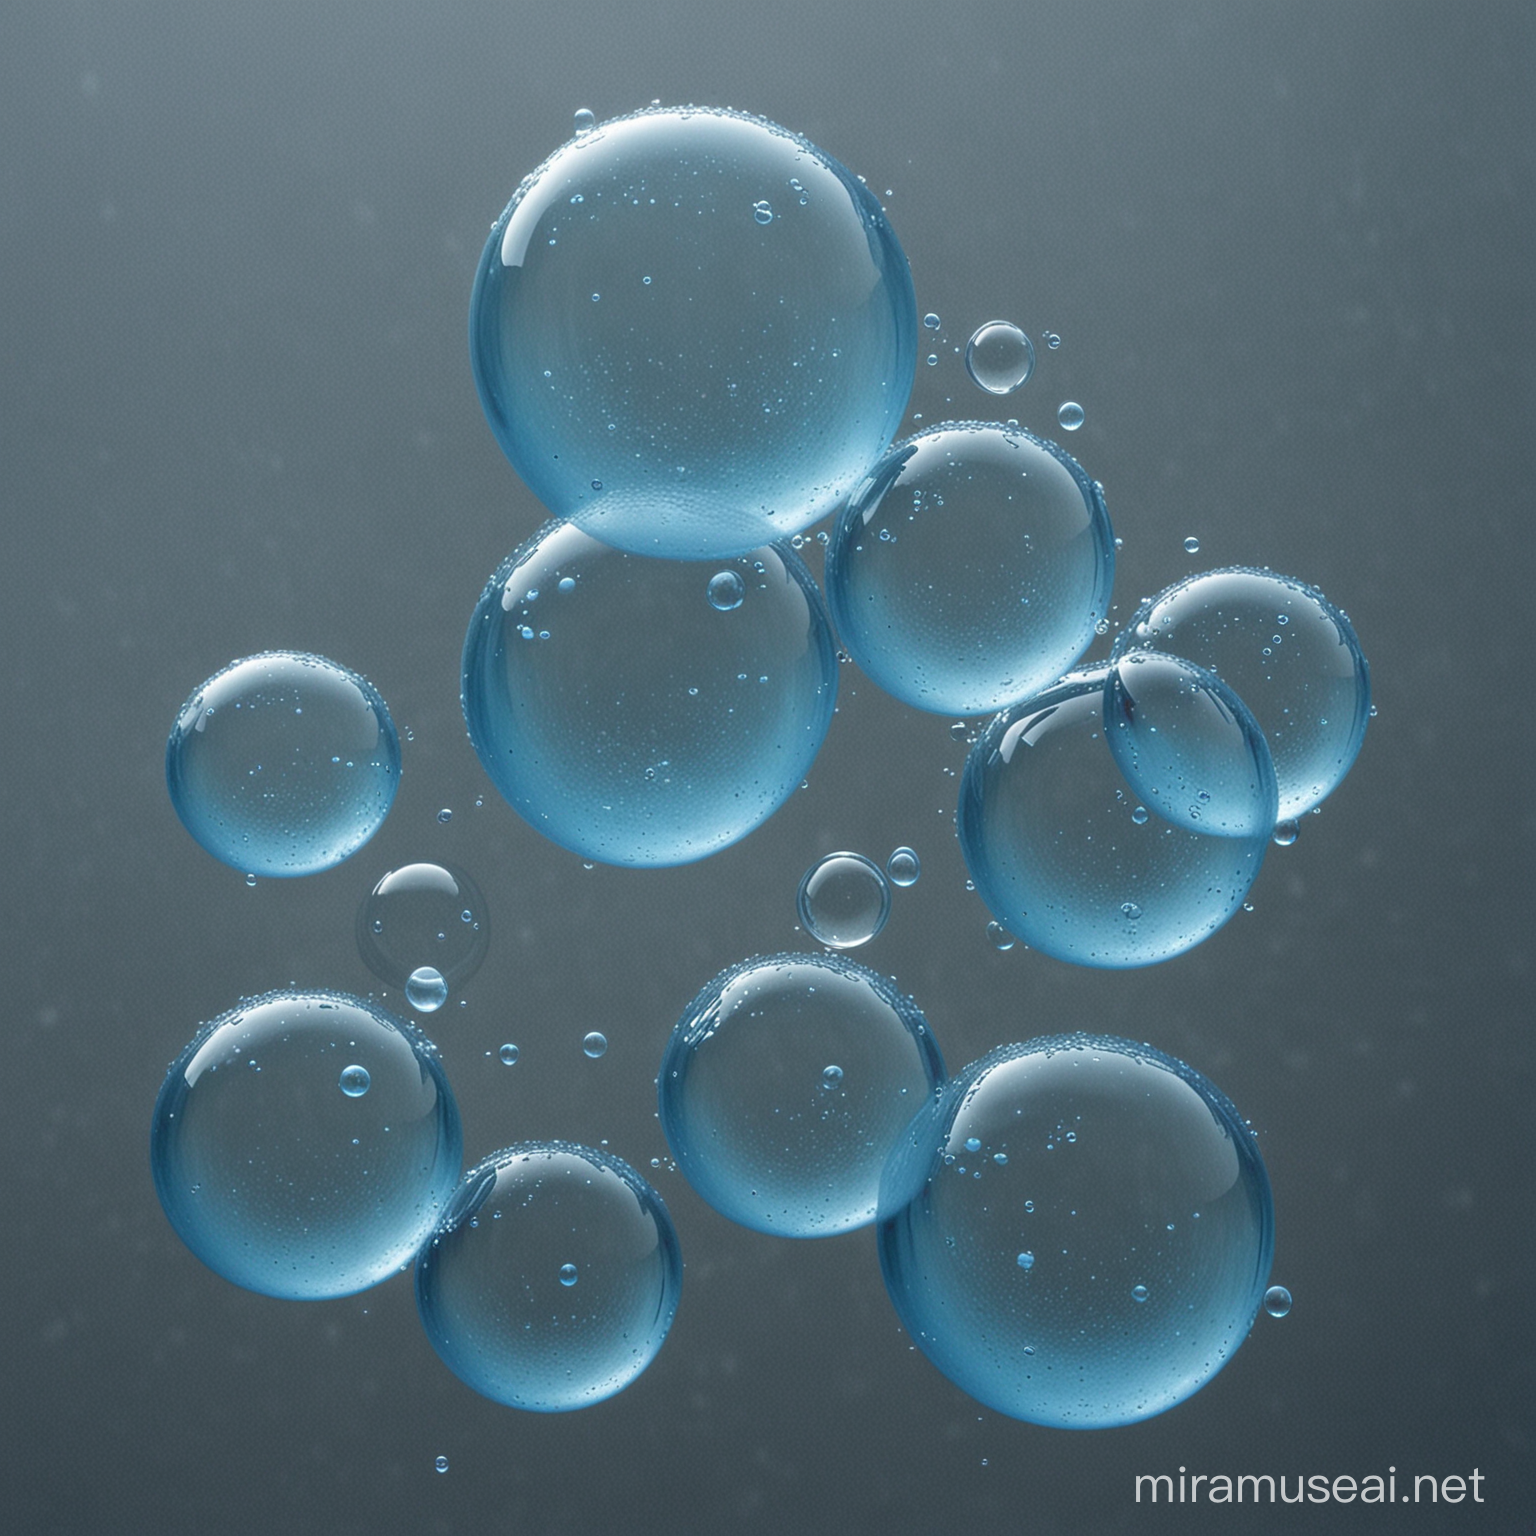 Transparent Blue Water Bubbles Background